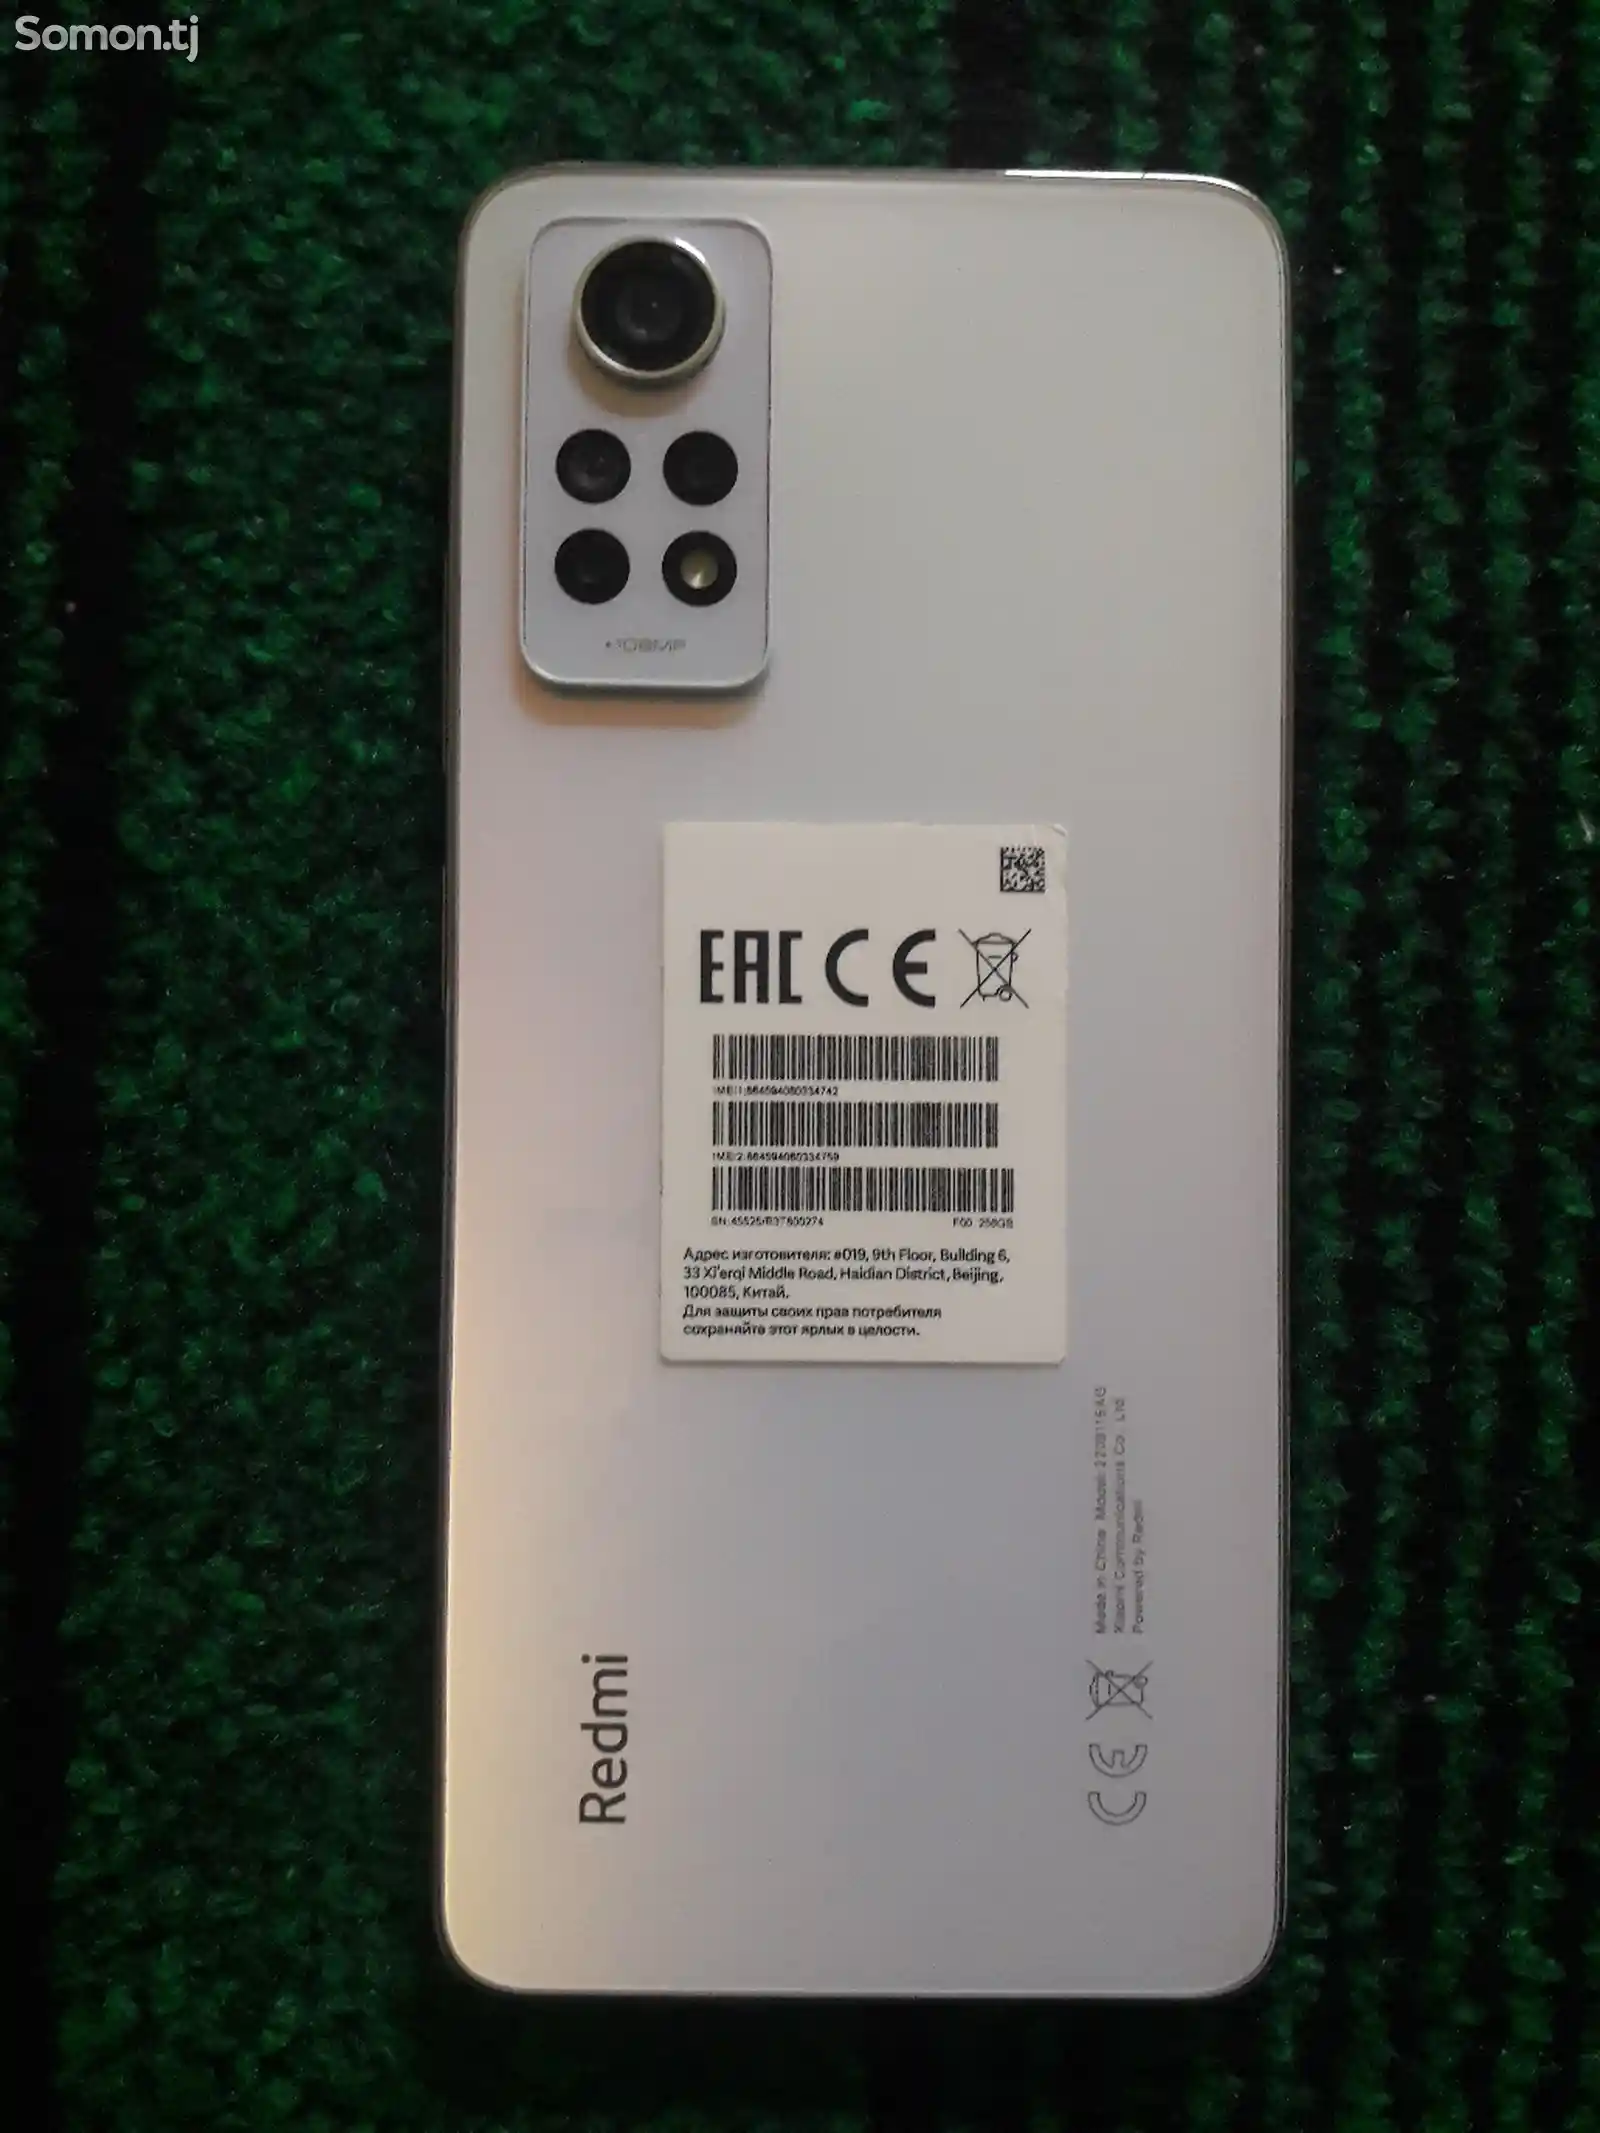 Xiaomi Redmi Note 12 Pro-2